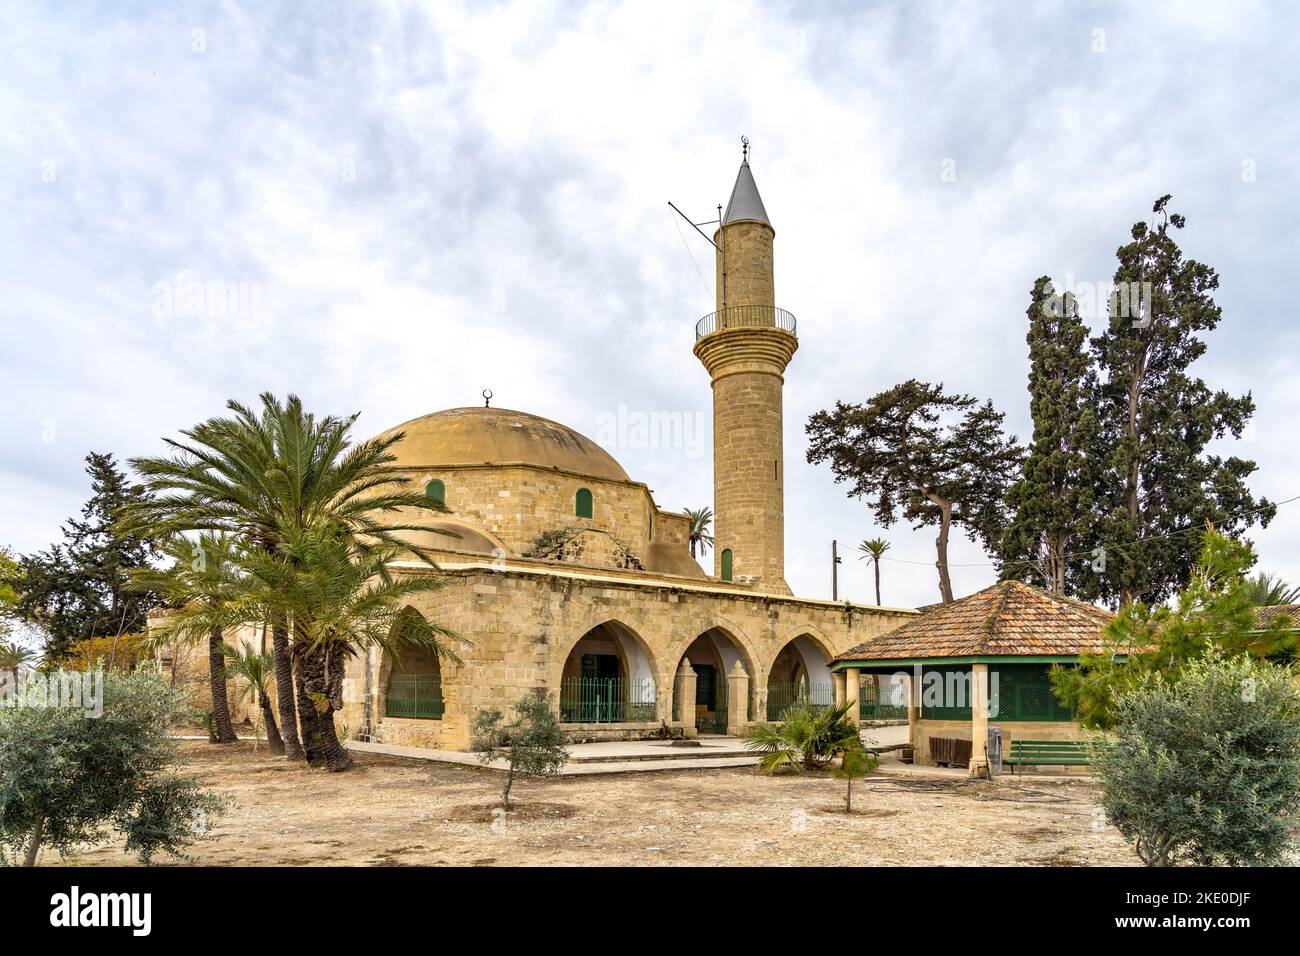 Die Moschee Hala Sultan Tekke, Larnaka, Zypern, Europa  |  Hala Sultan Tekke or the Mosque of Umm Haram, Larnaca, Cyprus, Europe Stock Photo